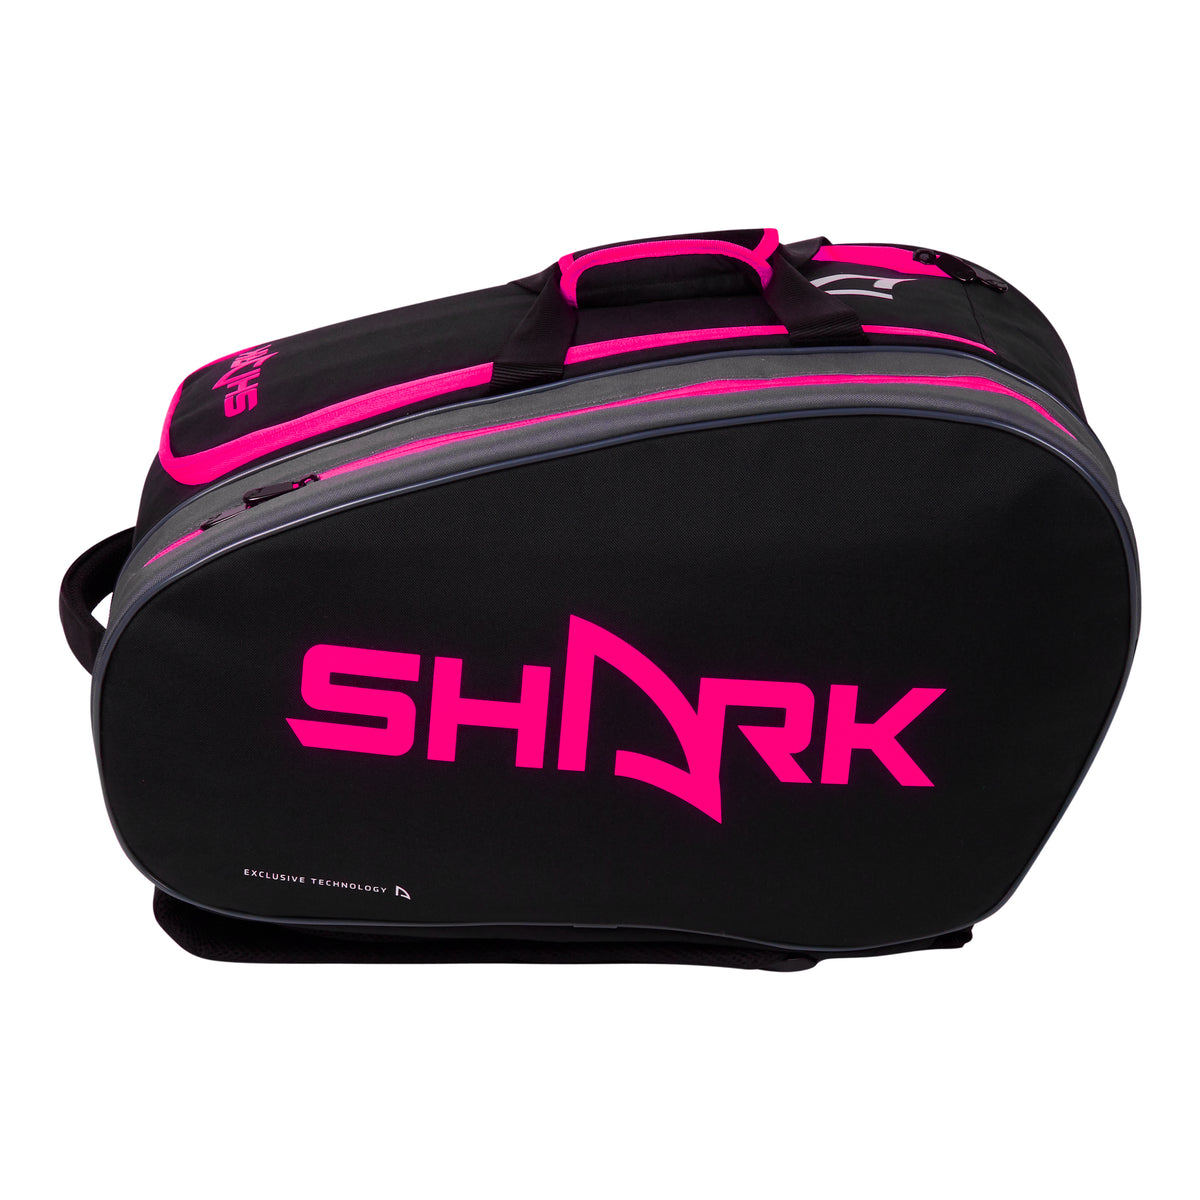 Shark Racquet bag Pink